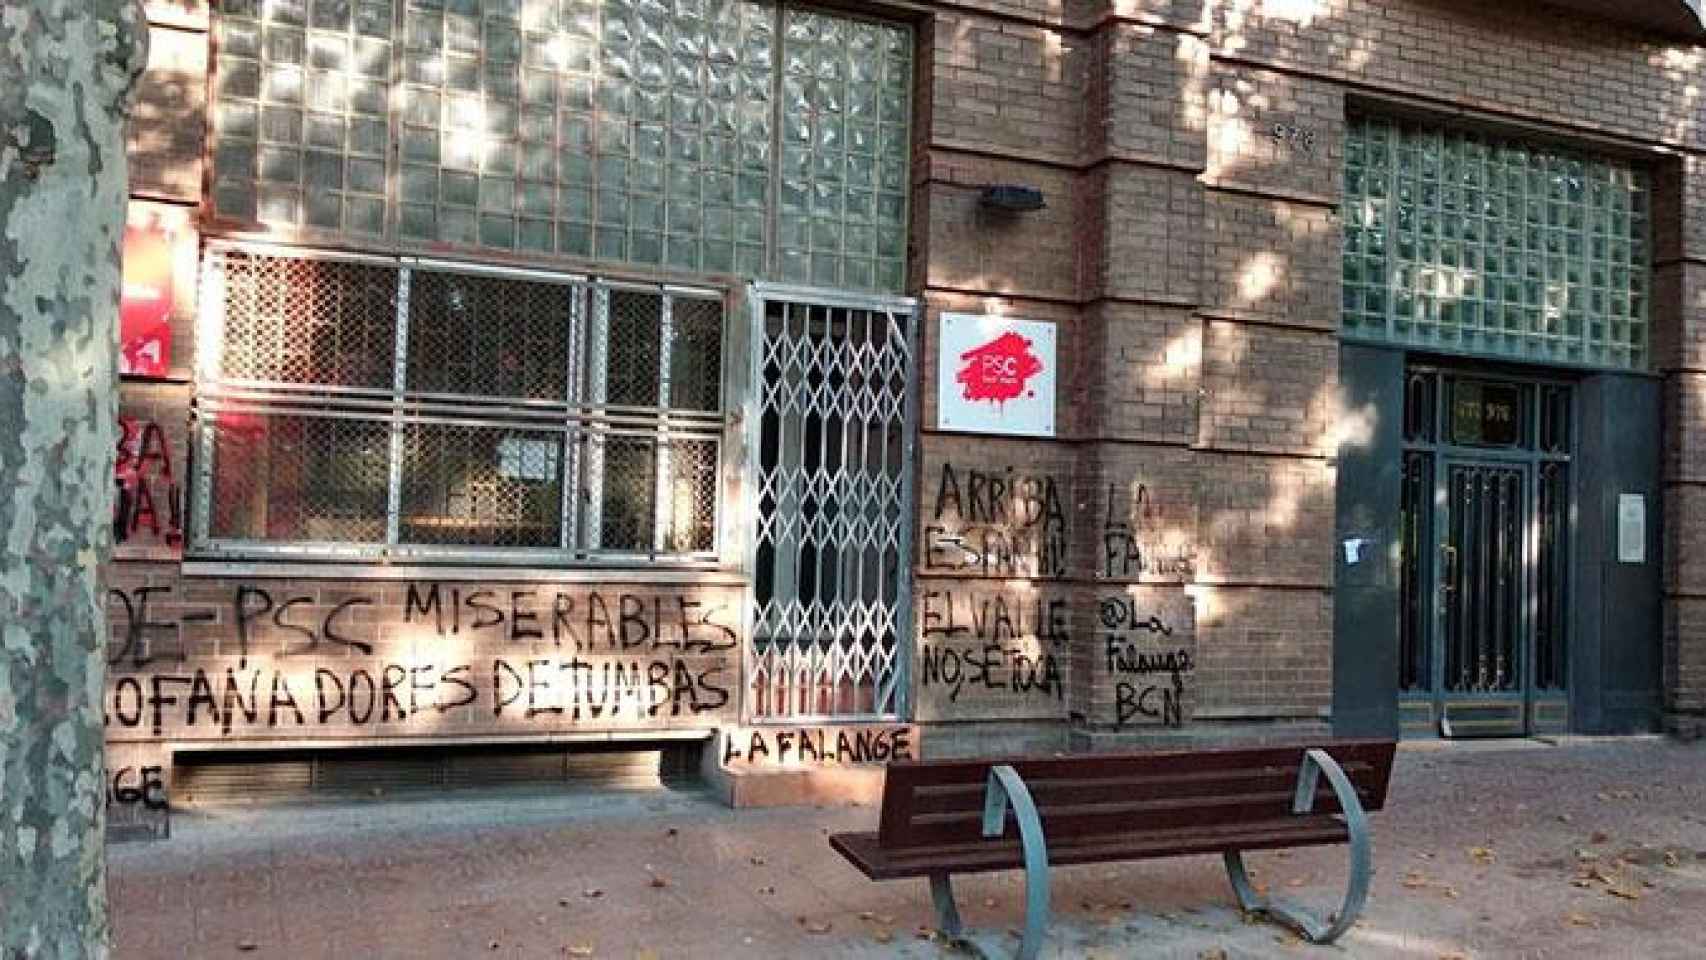 El exterior de la sede del PSC en Sant Martí (Barcelona), que los falangistas han atacado / CG